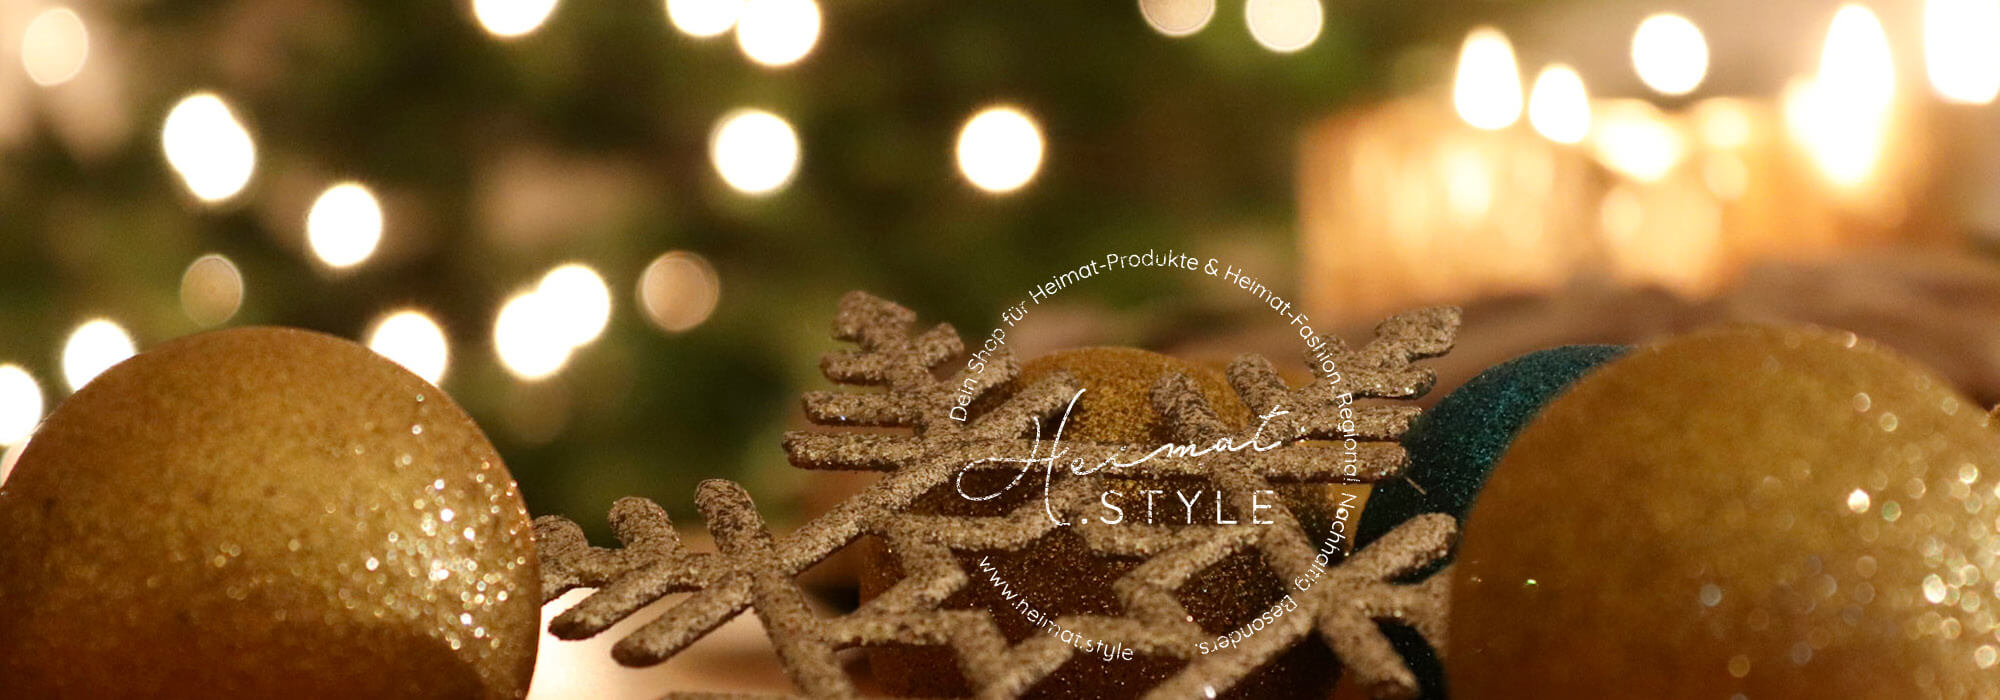 Heimat.Style Logo auf Foto mit Weihnachtsdekoration in gold und Lichtern im Hintergrund